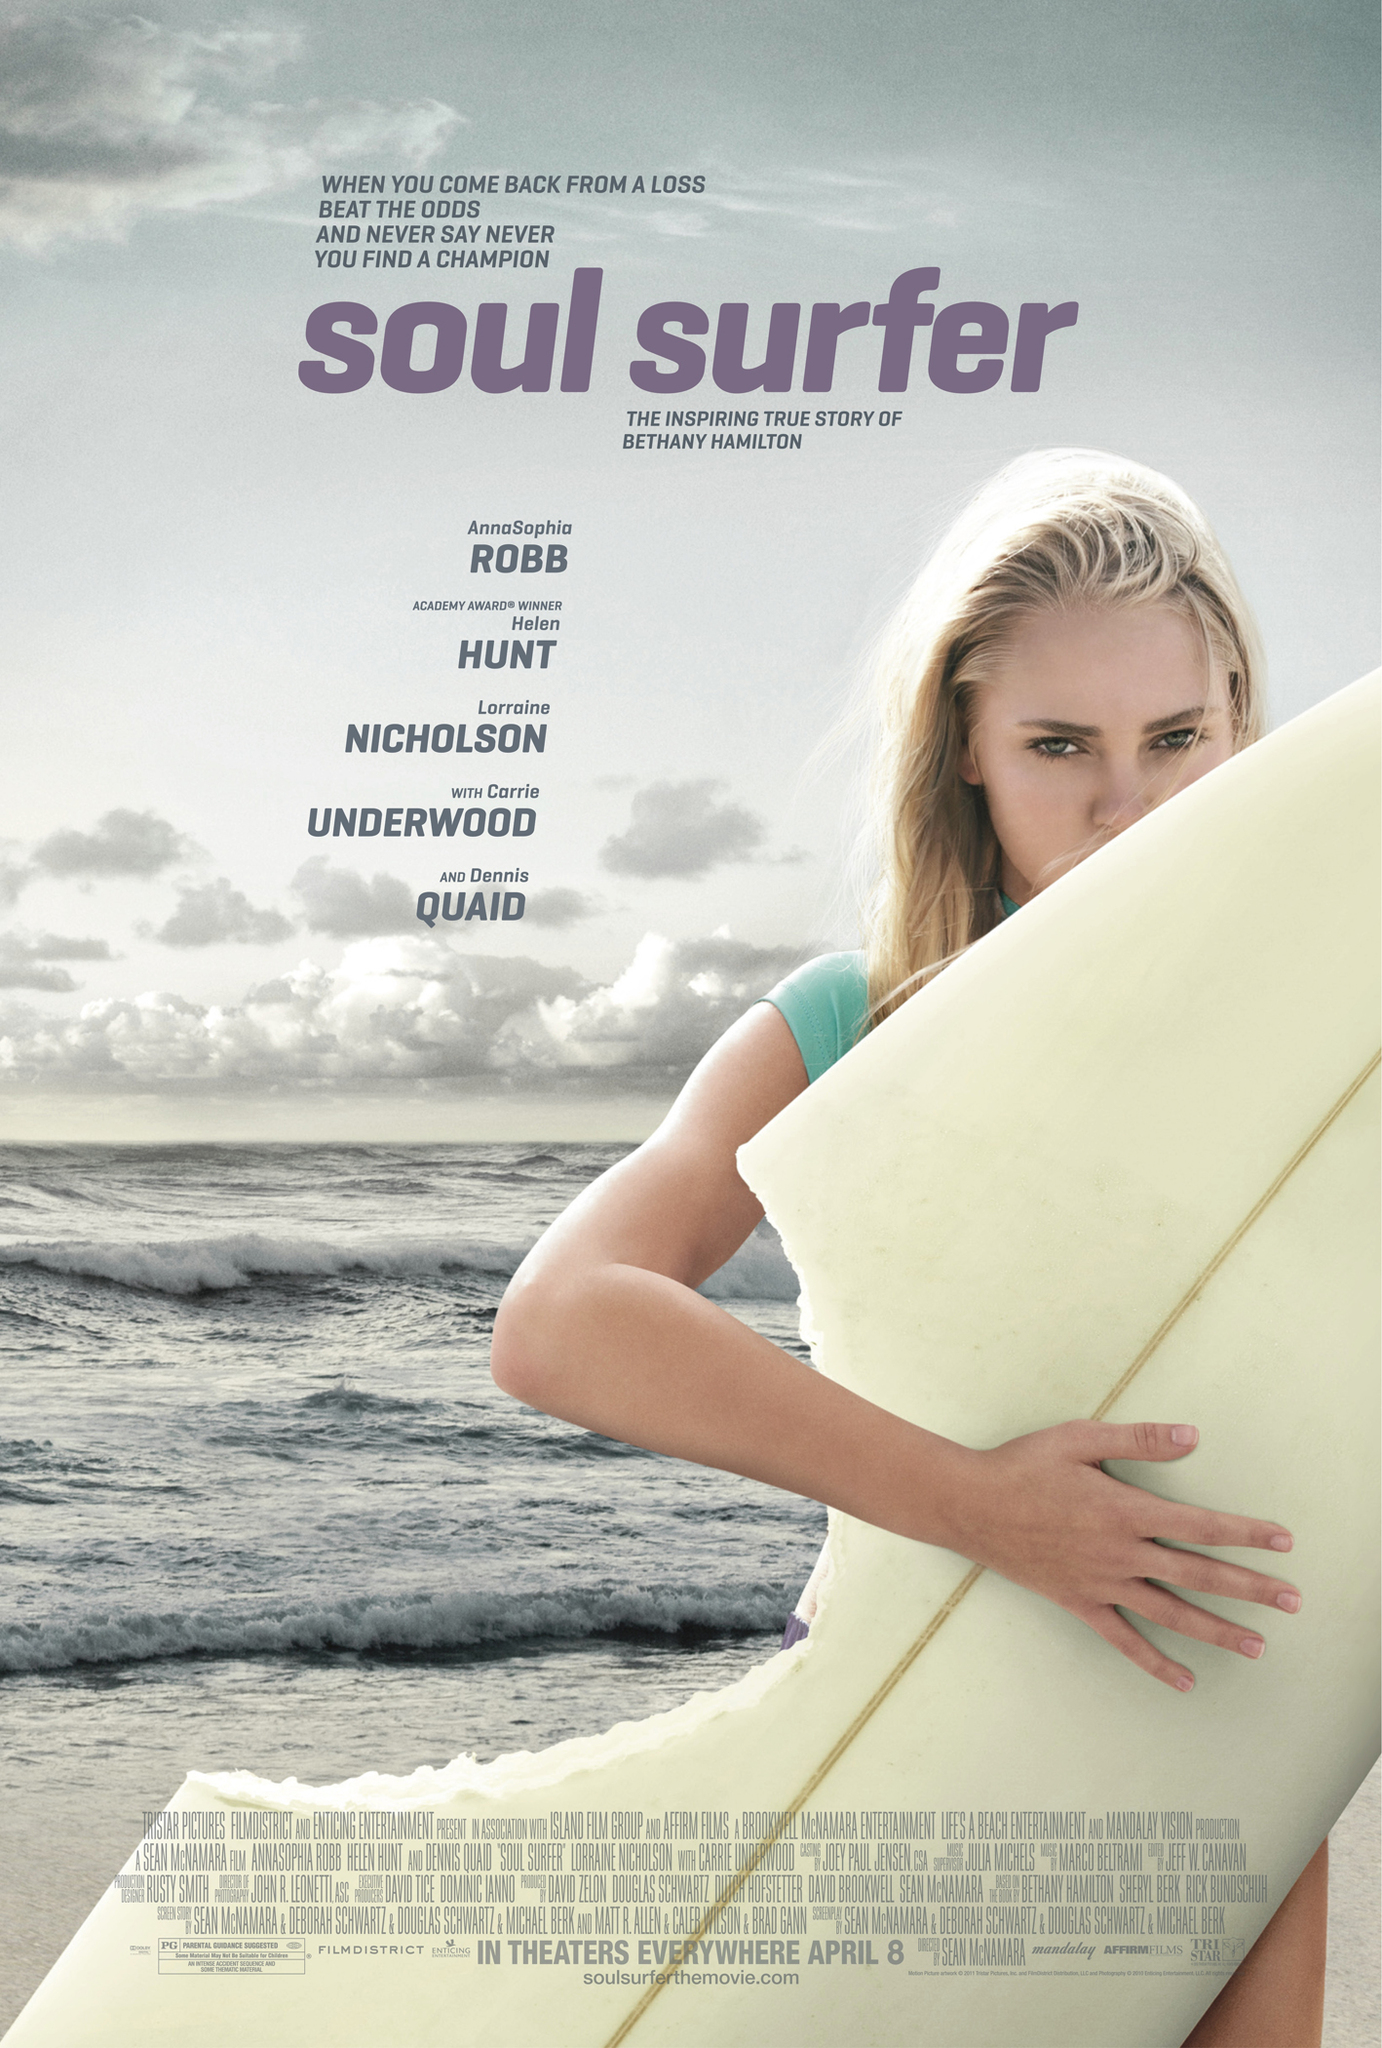 Soul Surfer (2011) โซล เซิร์ฟเฟอร์ หัวใจกระแทกคลื่น AnnaSophia Robb